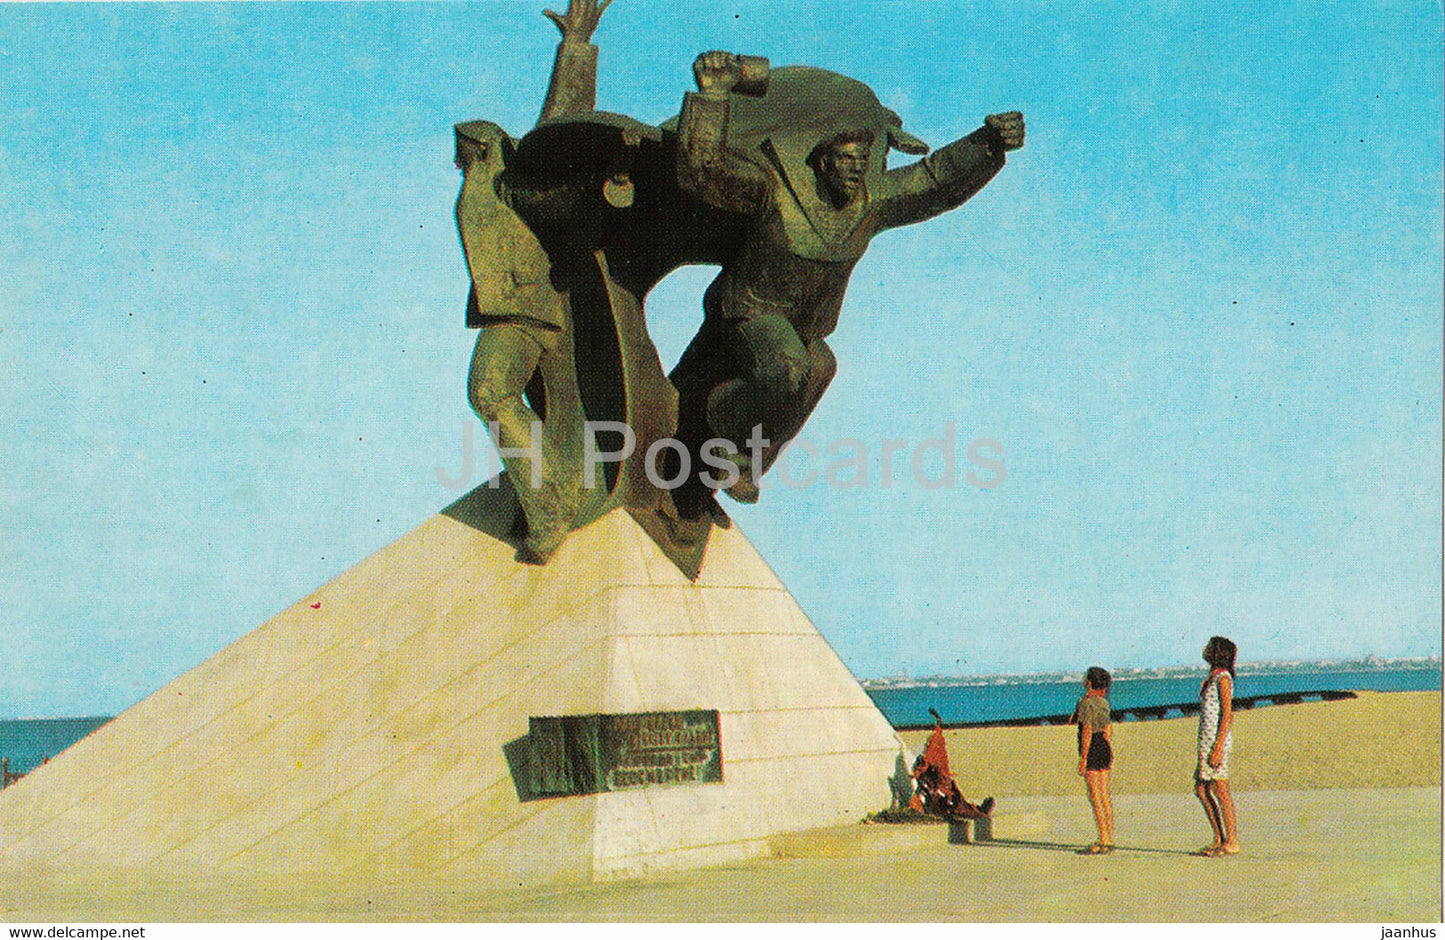 Yevpatoriya - Evpatoria - Monument to the Black Sea sailors - Crimea - 1975 - Ukraine USSR - unused - JH Postcards